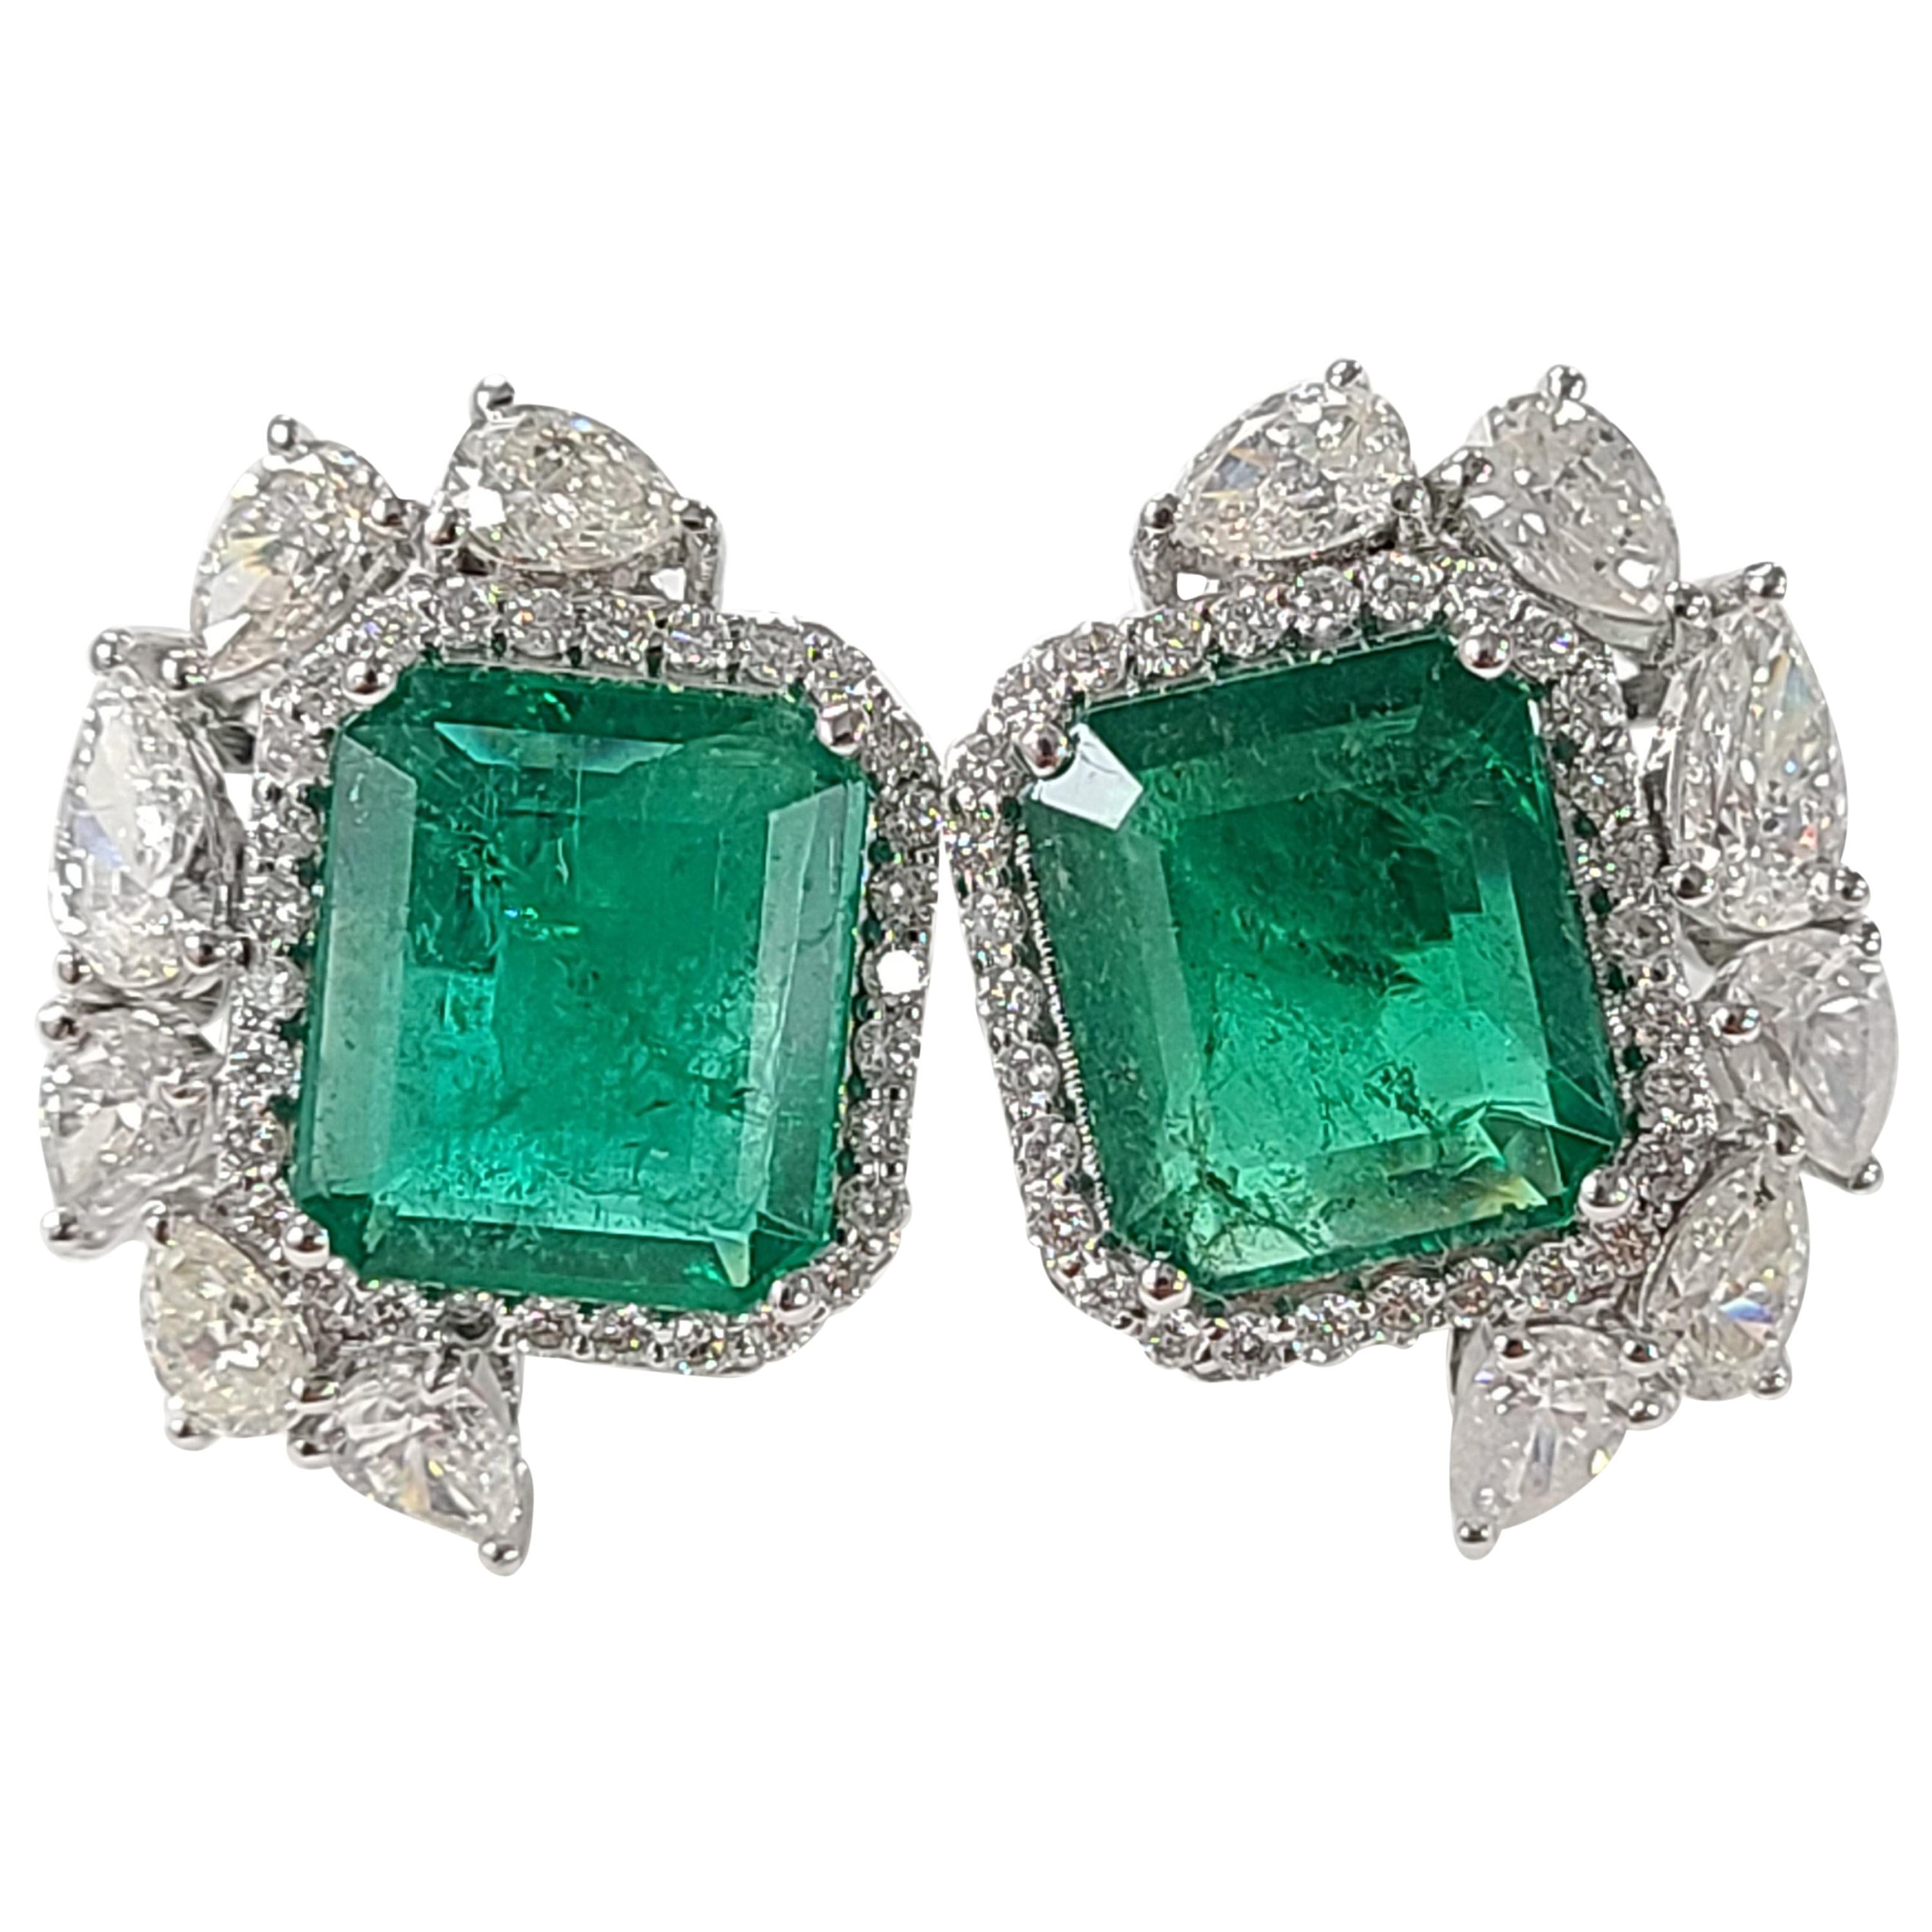 18 Karat White Gold Natural Zambian Emeralds Studs with Diamonds